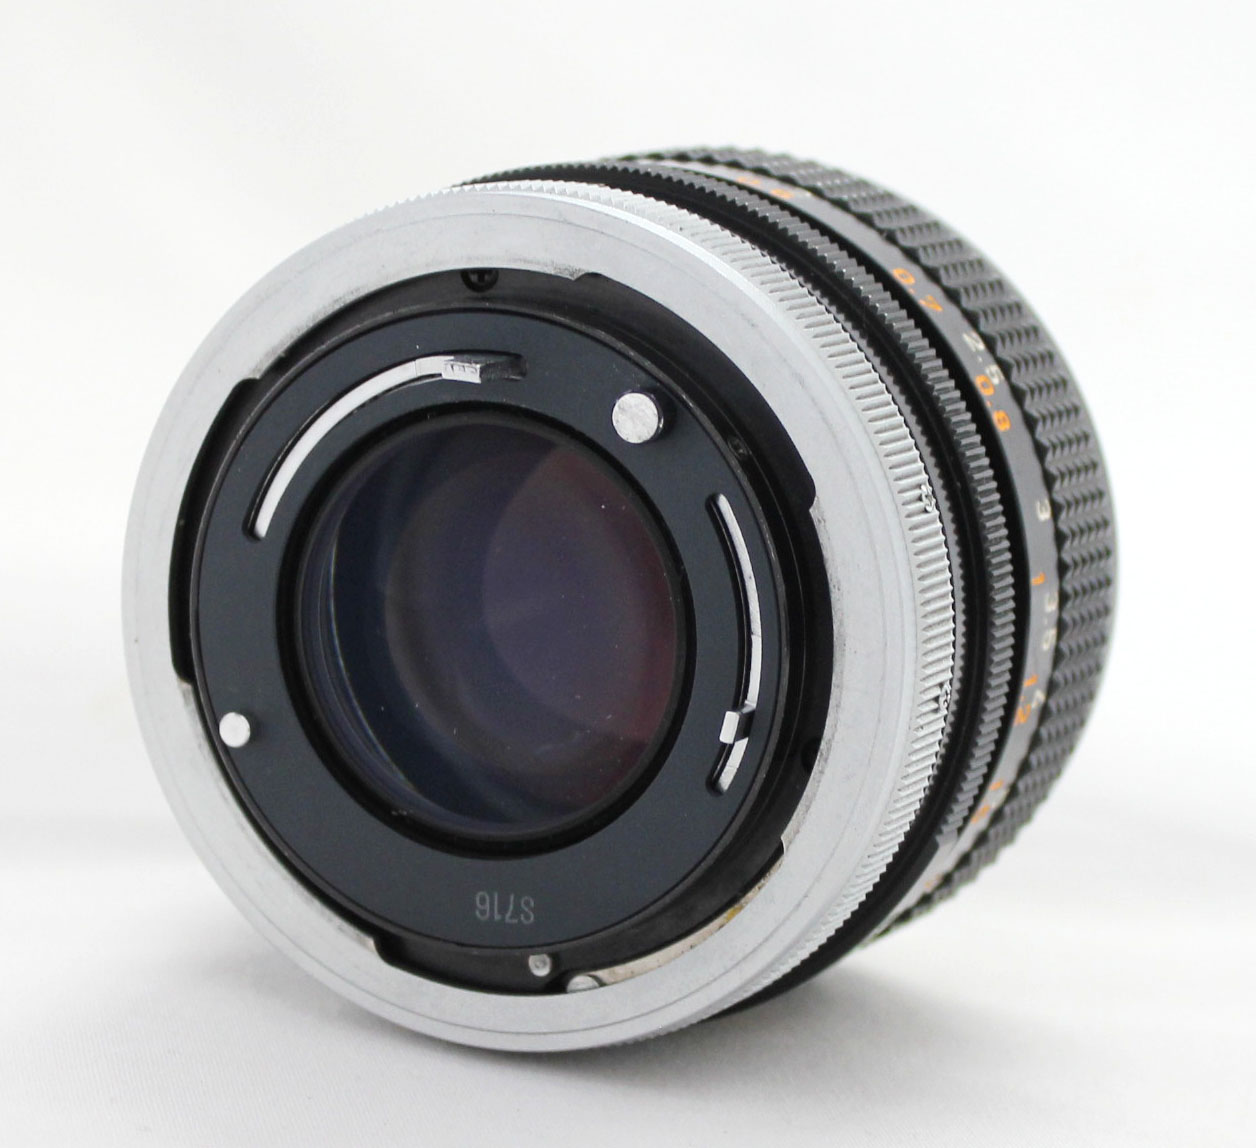 Canon AE-1 35mm SLR Camera with FD 50mm F/1.4 S.S.C. Lens from Japan Photo 13